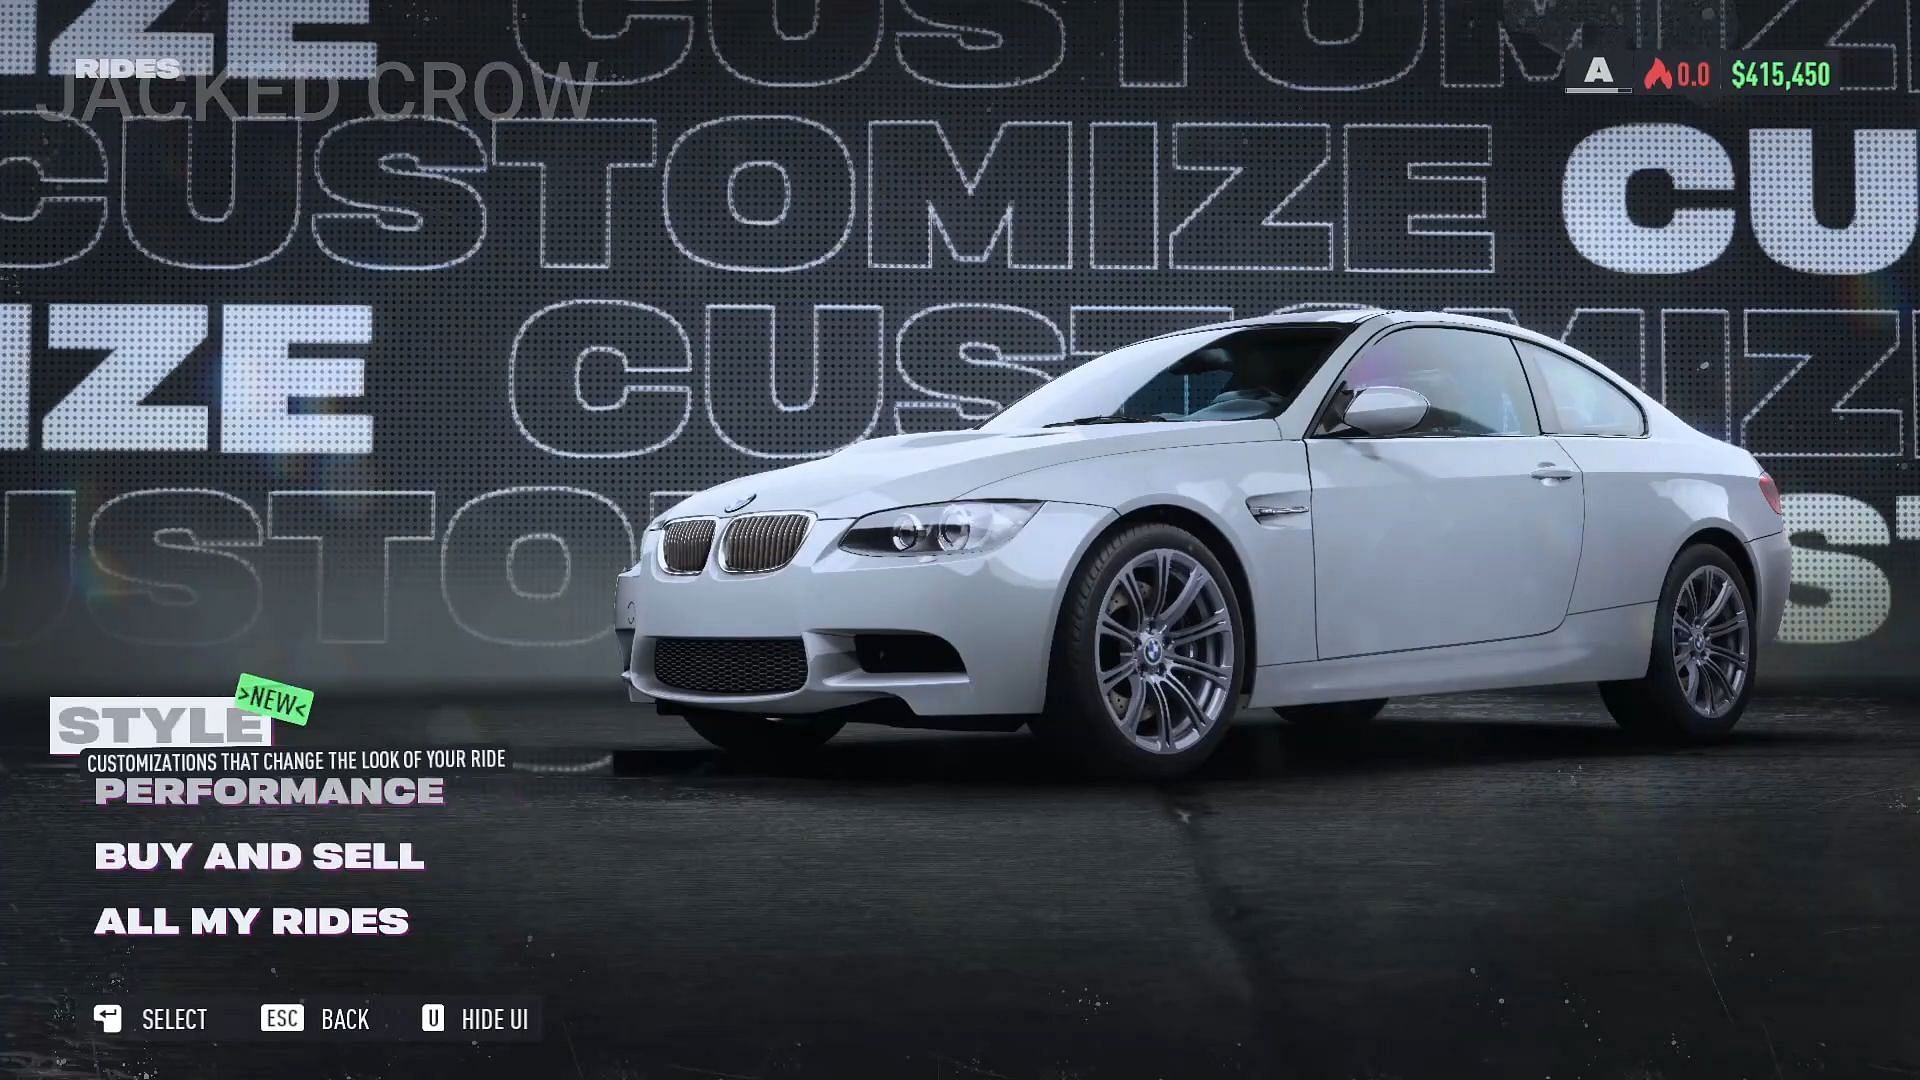 El BMW M3 Coupe (Imagen a través de YouTube/Jacked Crow)